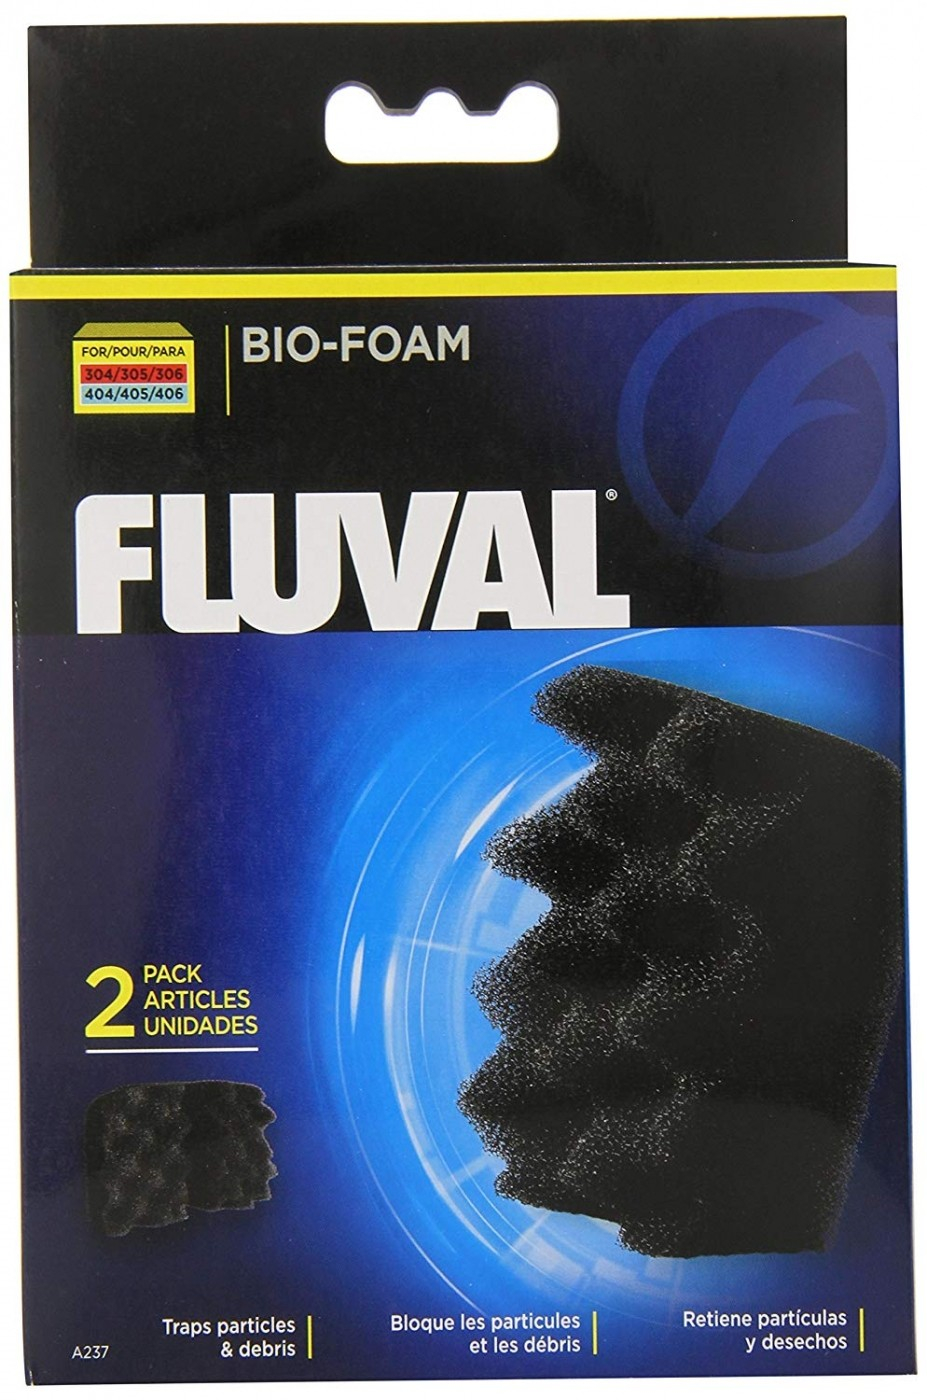 Blocs de mousse Bio-Foam Fluval, paquet de 2 pour filtres fluval 304, 305, 306, 404, 405 et 406